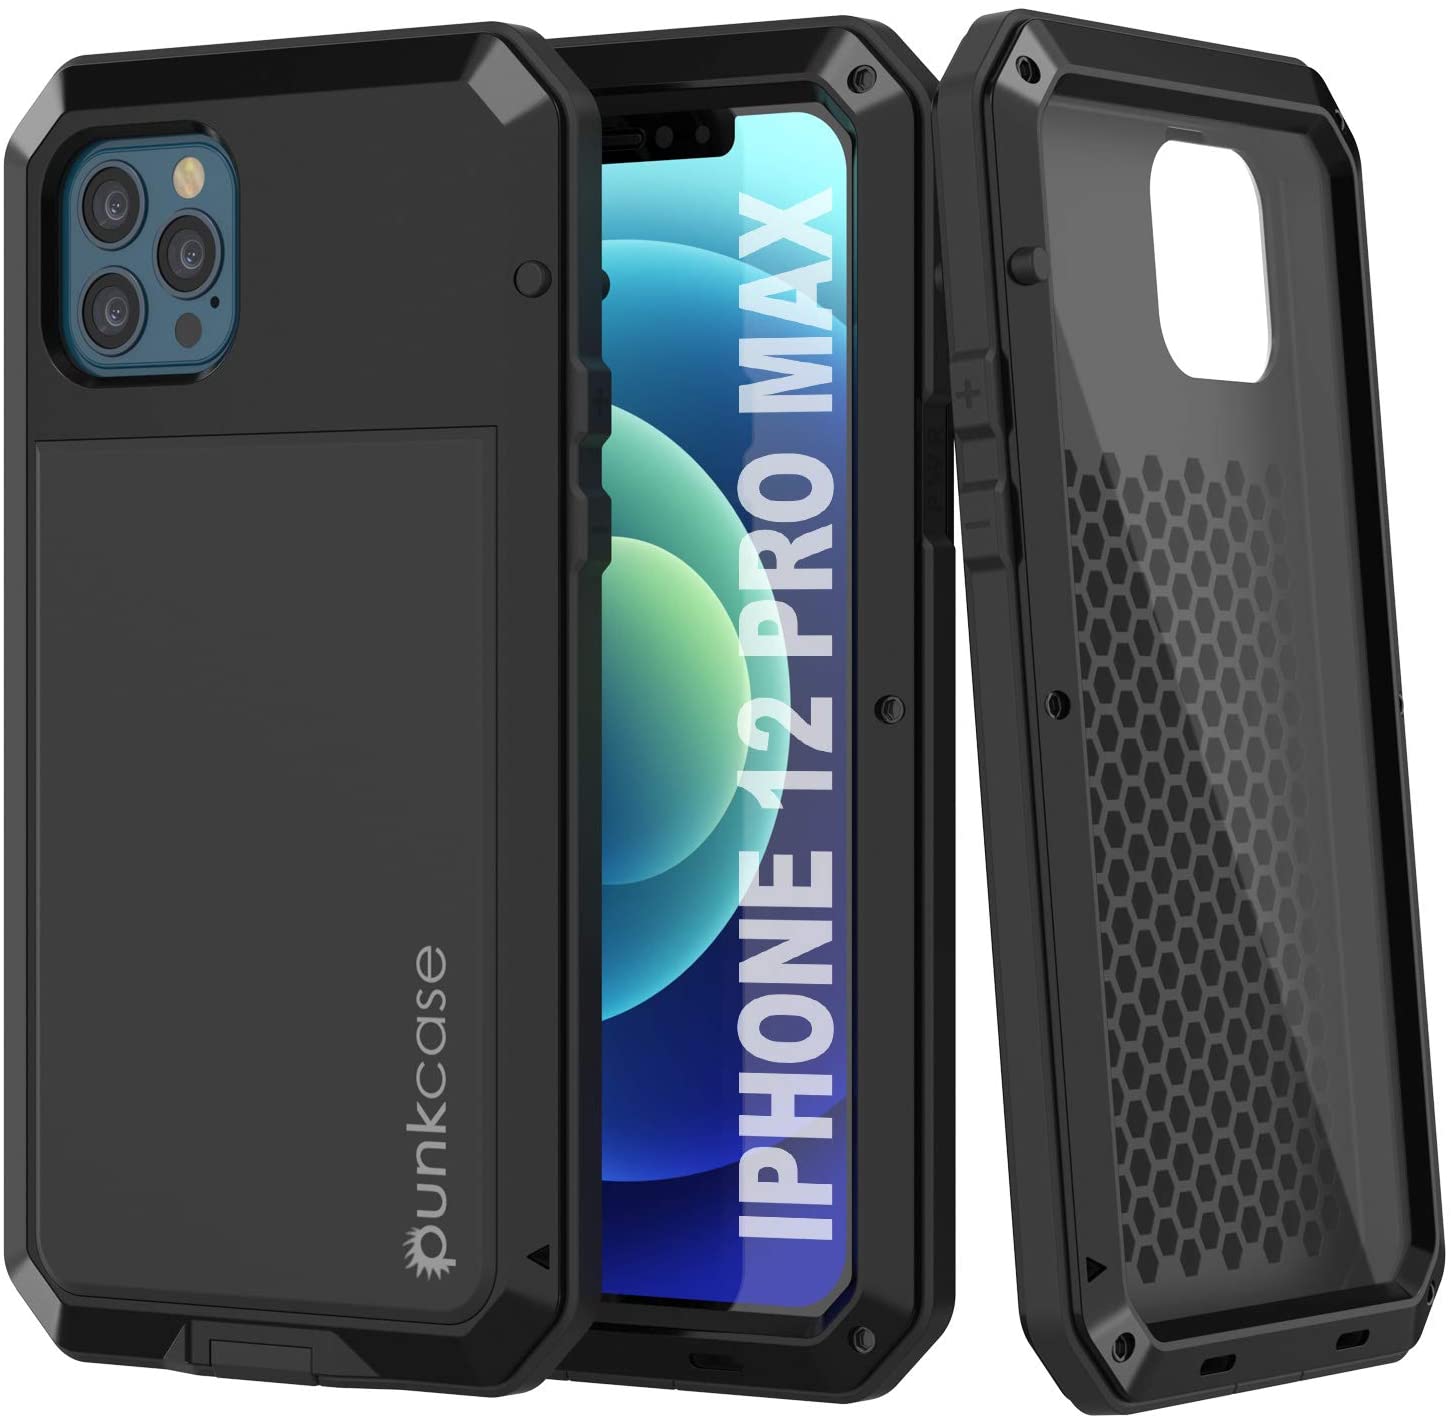 iPhone 12 Pro Max Cases  iphone, iphone cases, case